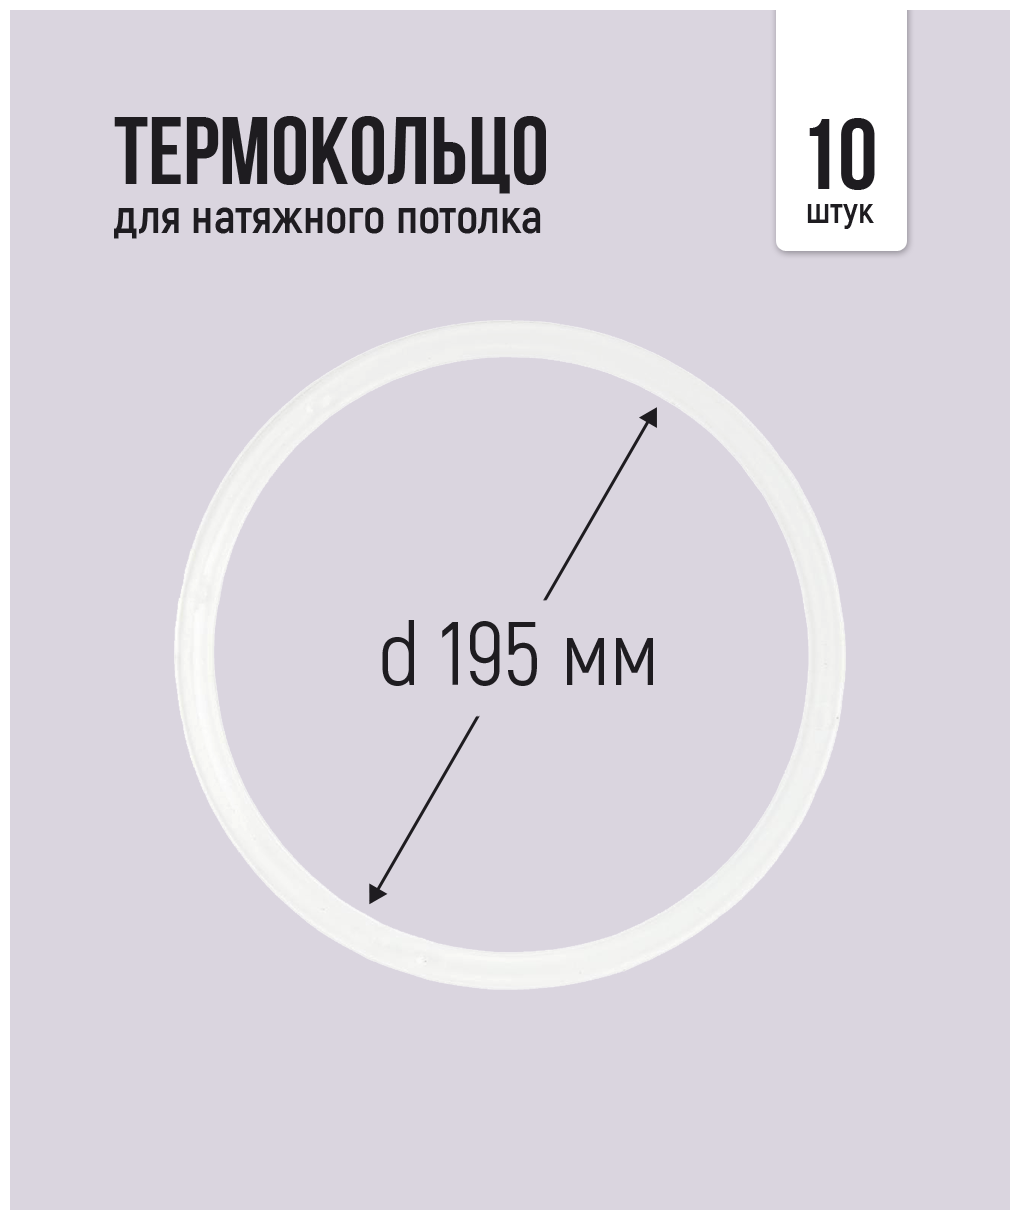 Термокольцо для натяжного потолка d 195 мм, 10 шт